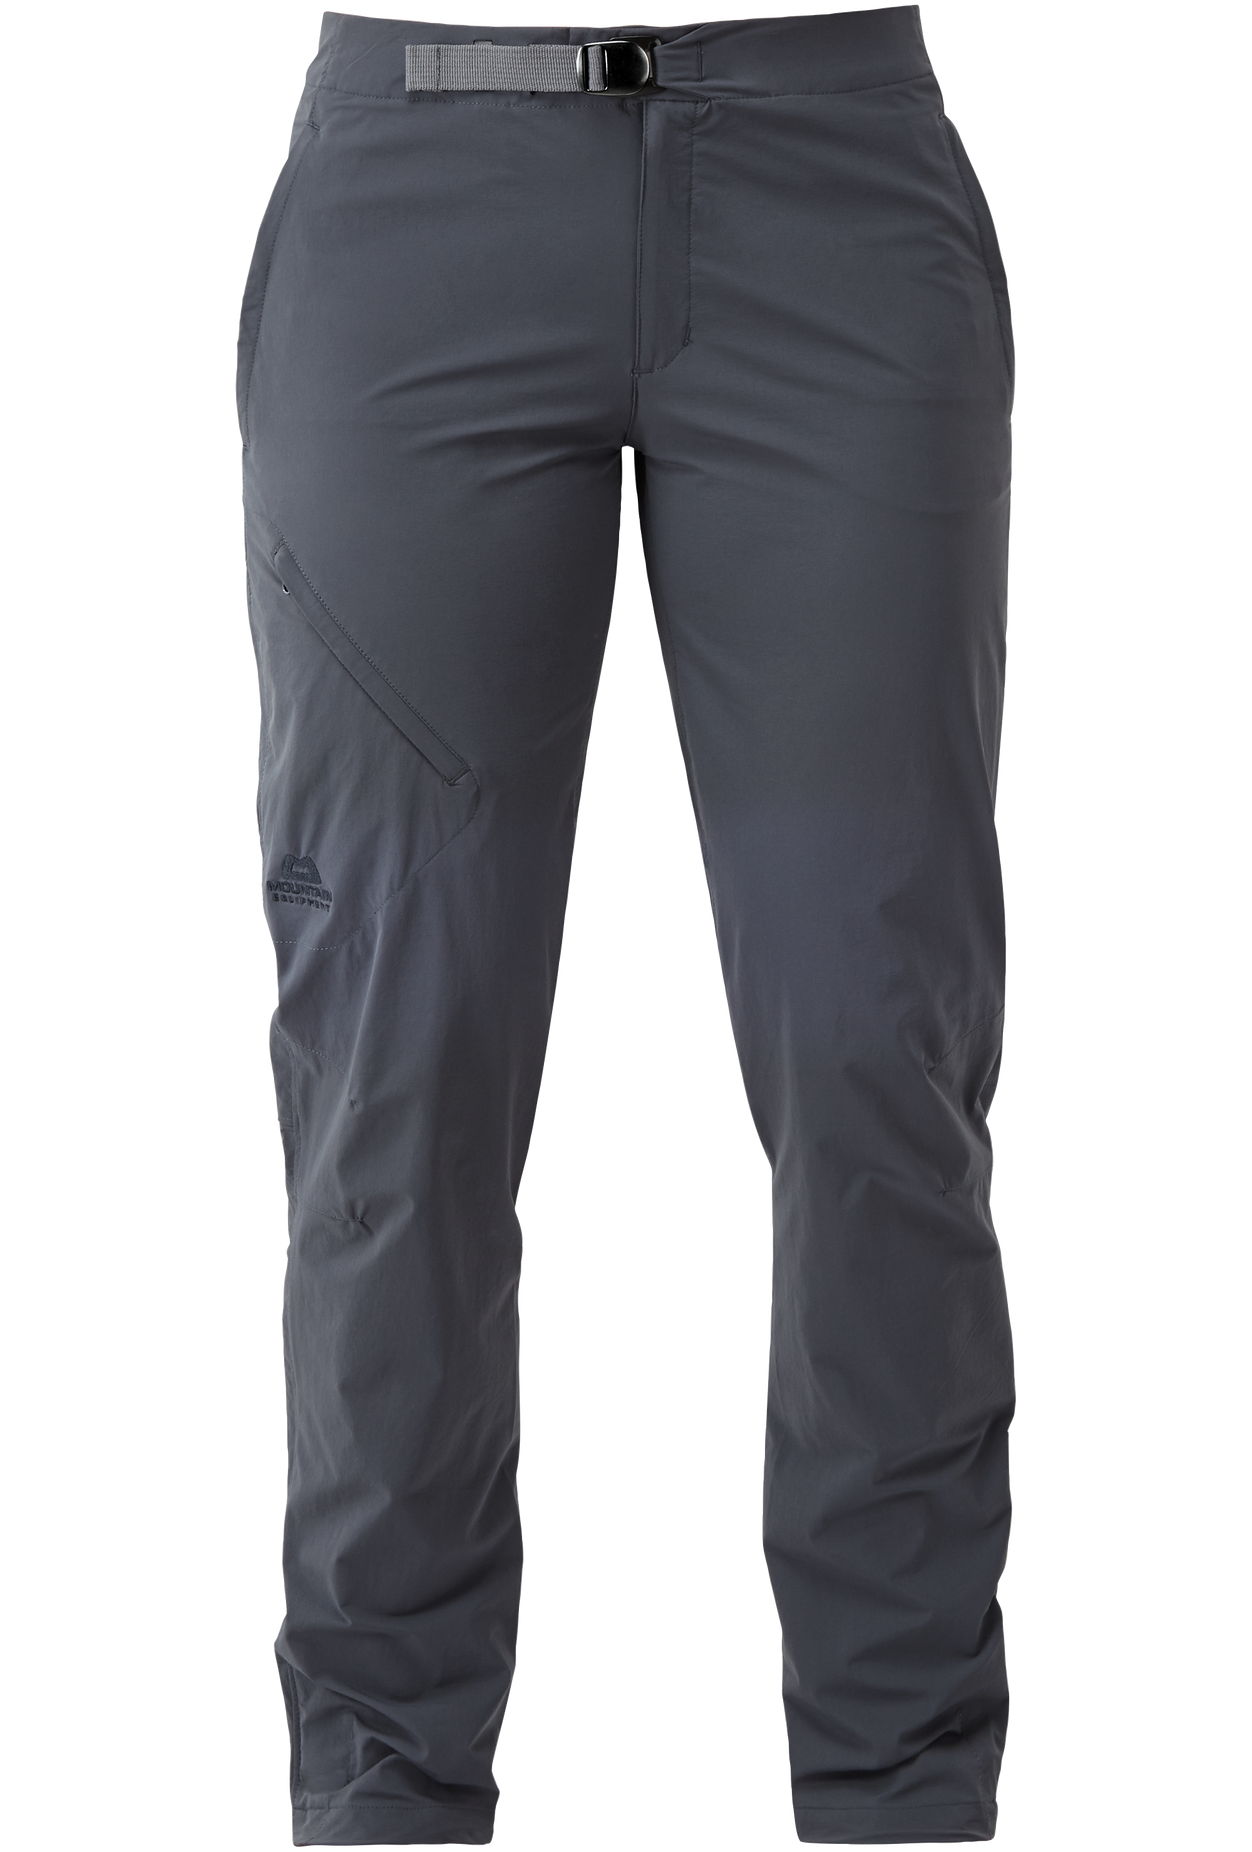 Mountain Equipment dámské softshellové kalhoty Comici Wmns Pant - prodloužené Barva: Ombre Blue, Velikost: 10/S